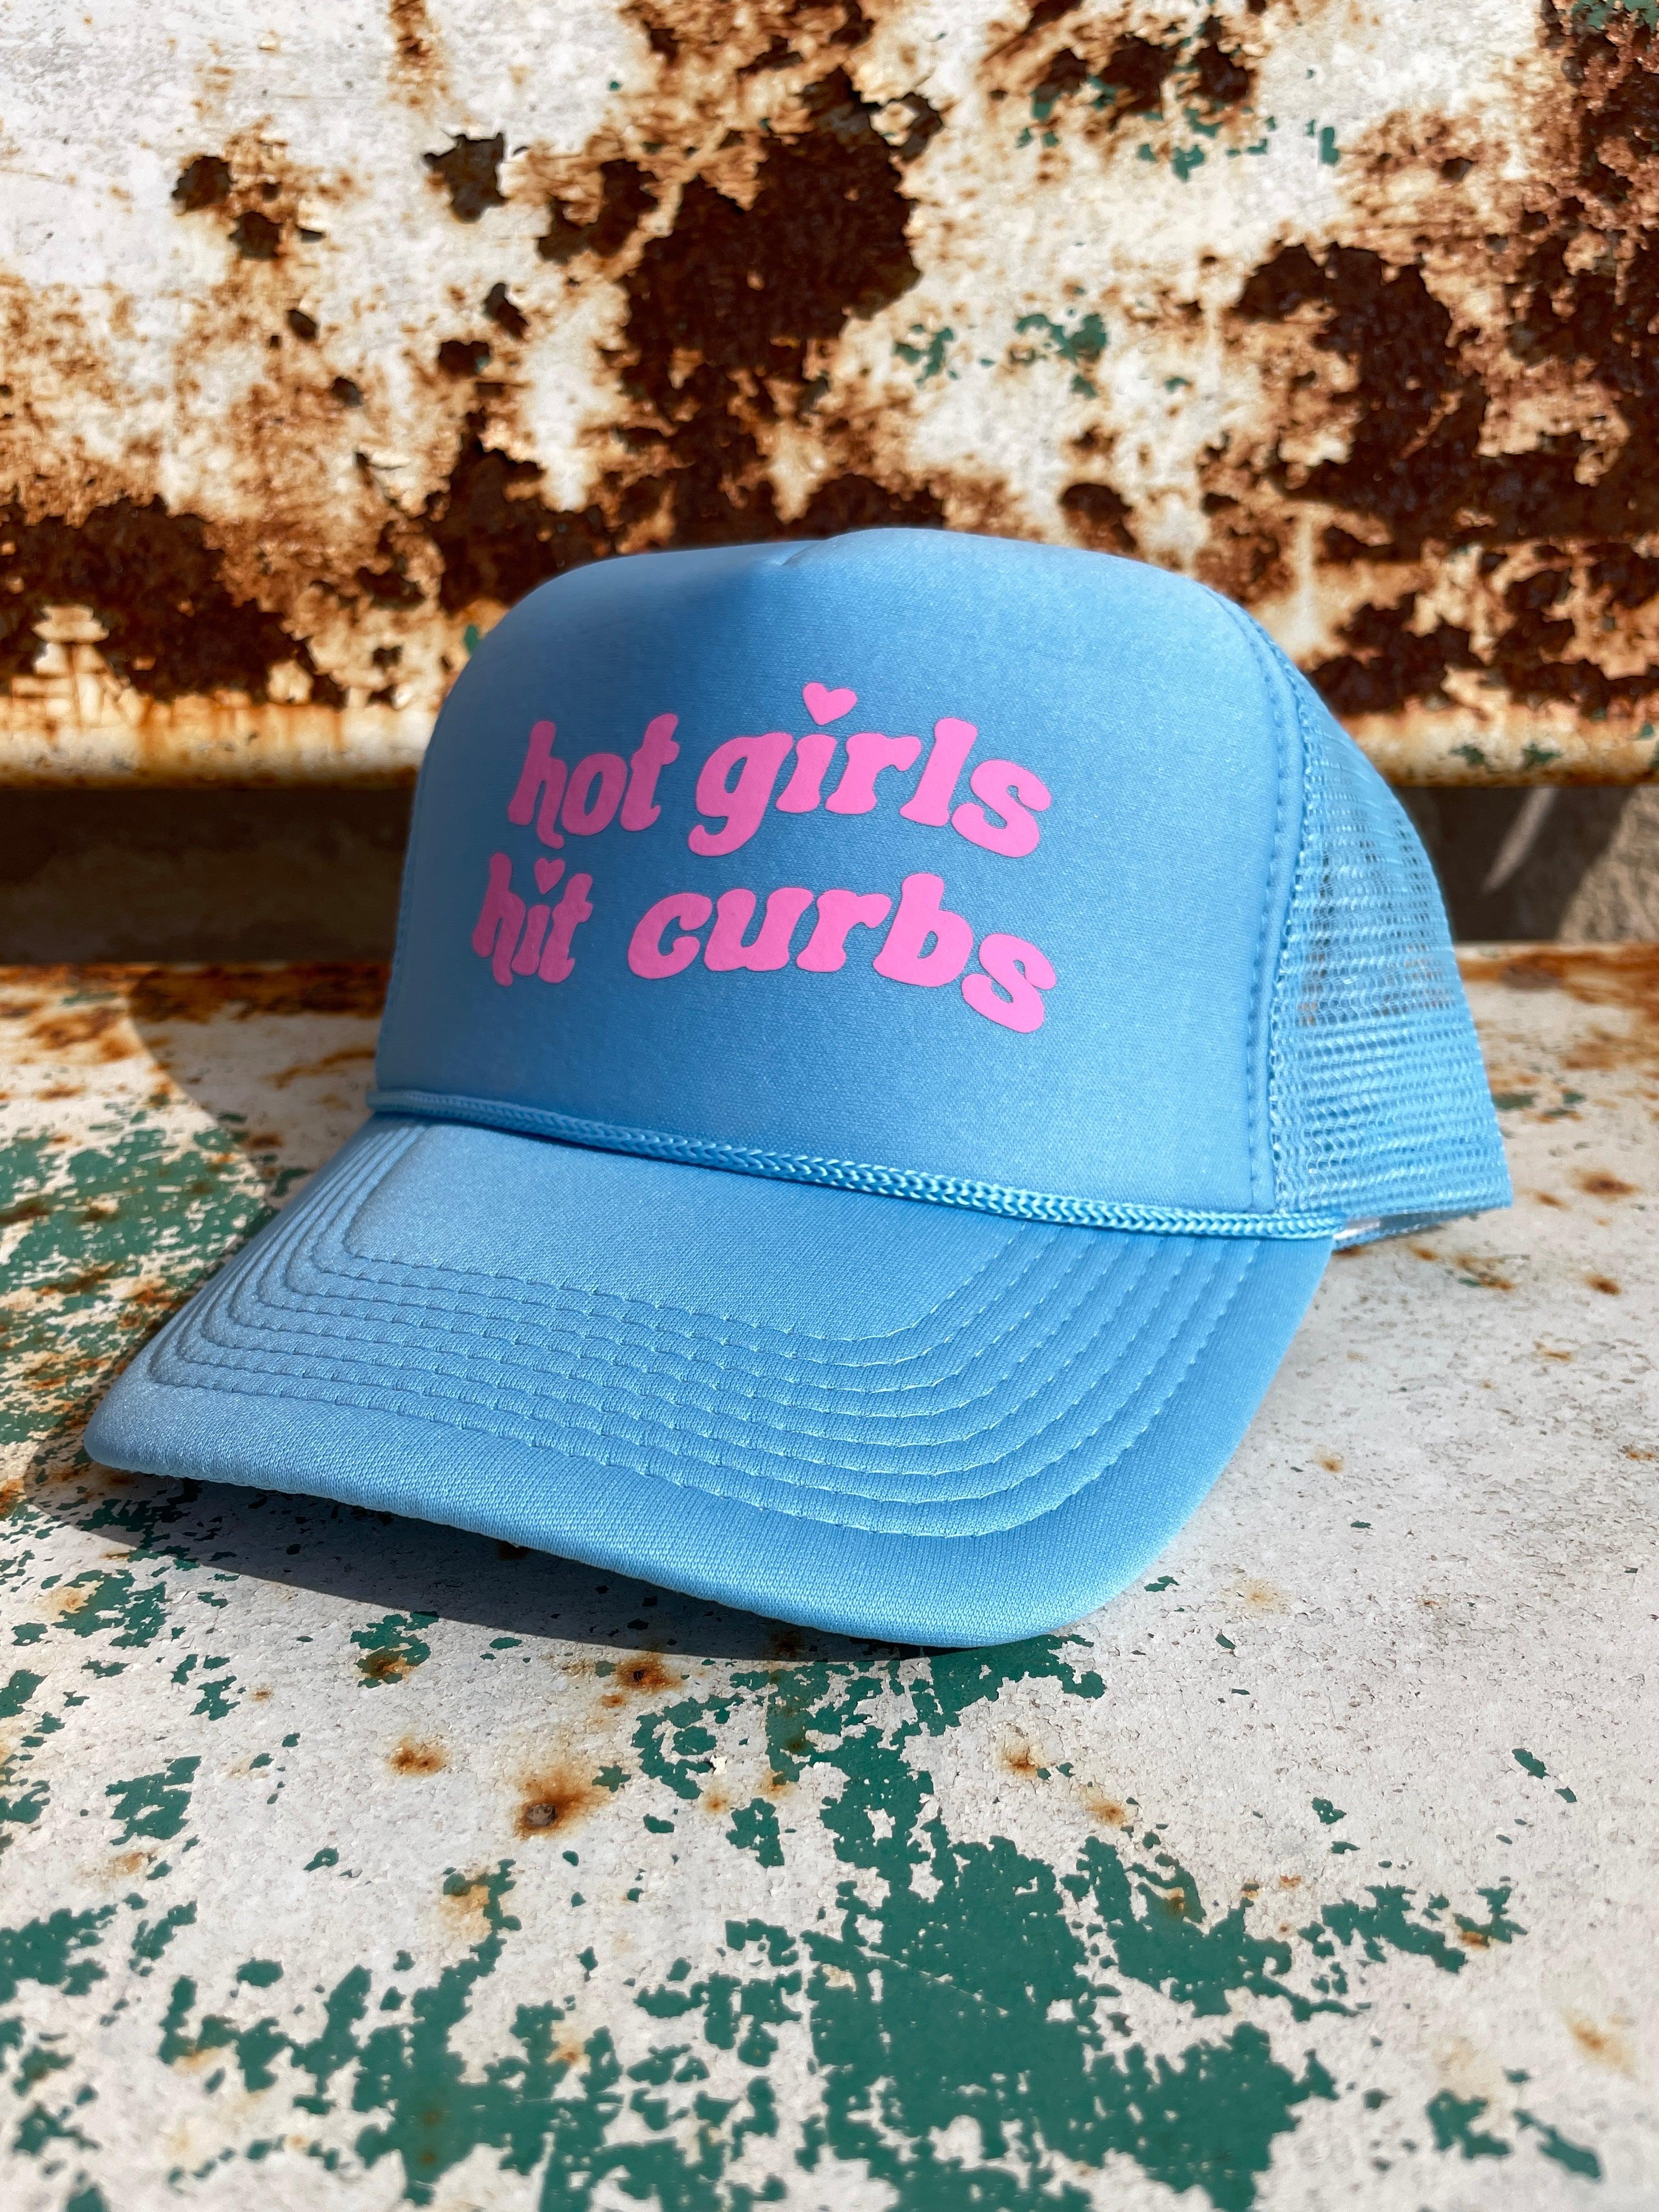 Hot Girls Hit Curbs Foam Trucker Hat - Vintage Soul